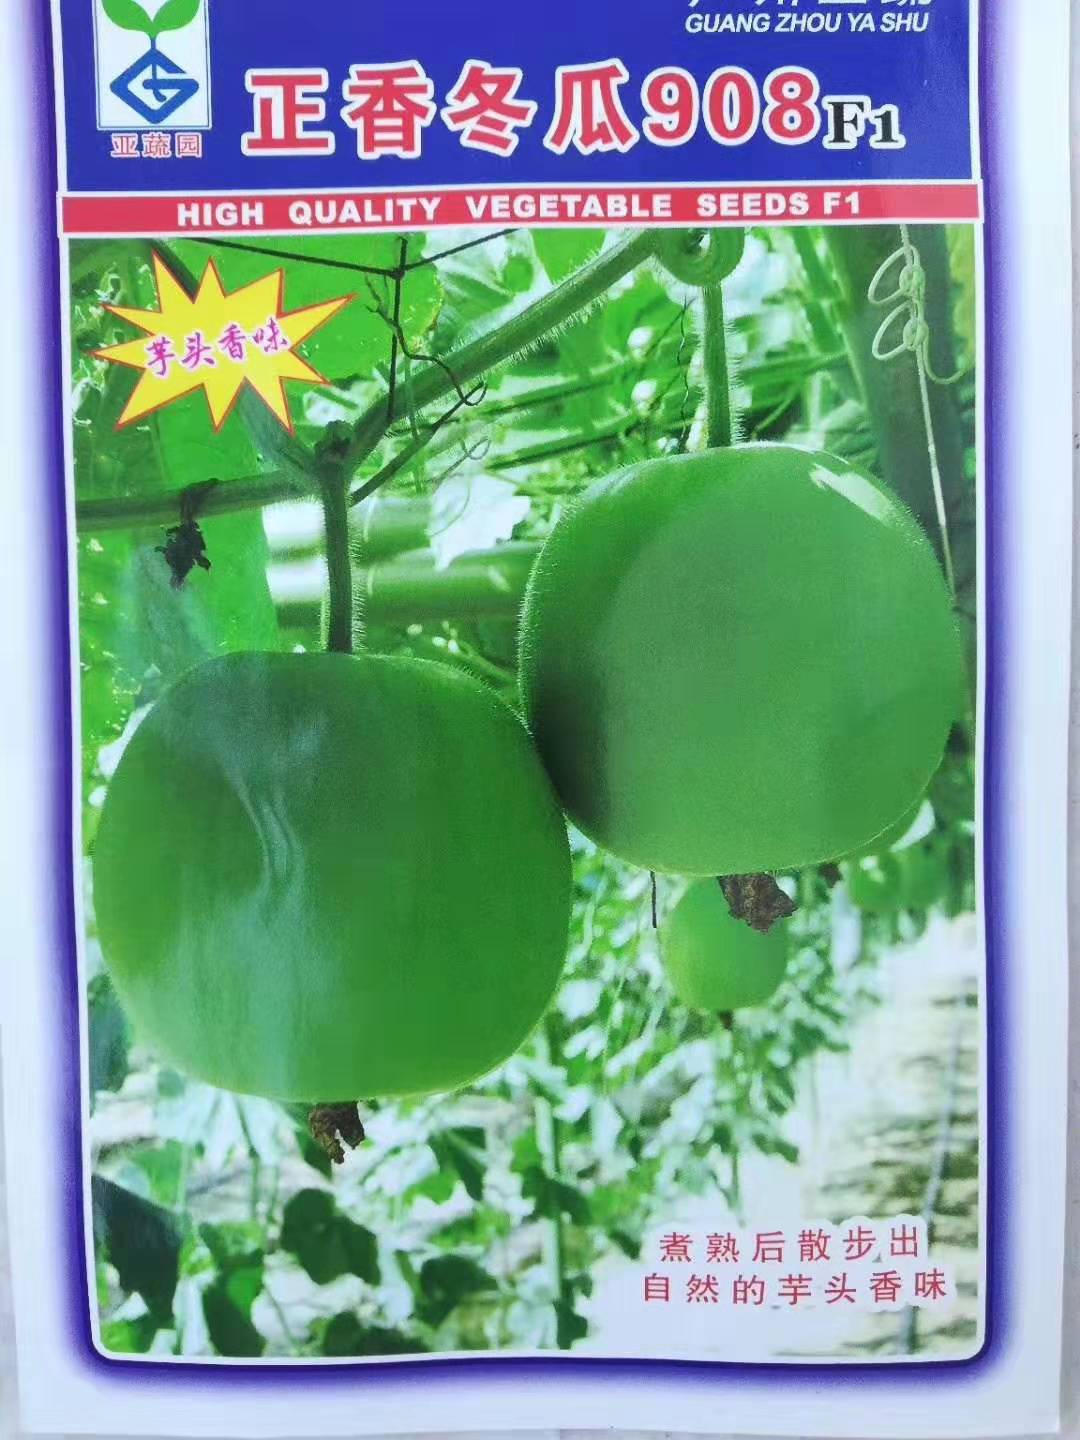 袋装冬瓜种子技术 袋装香芋冬瓜种